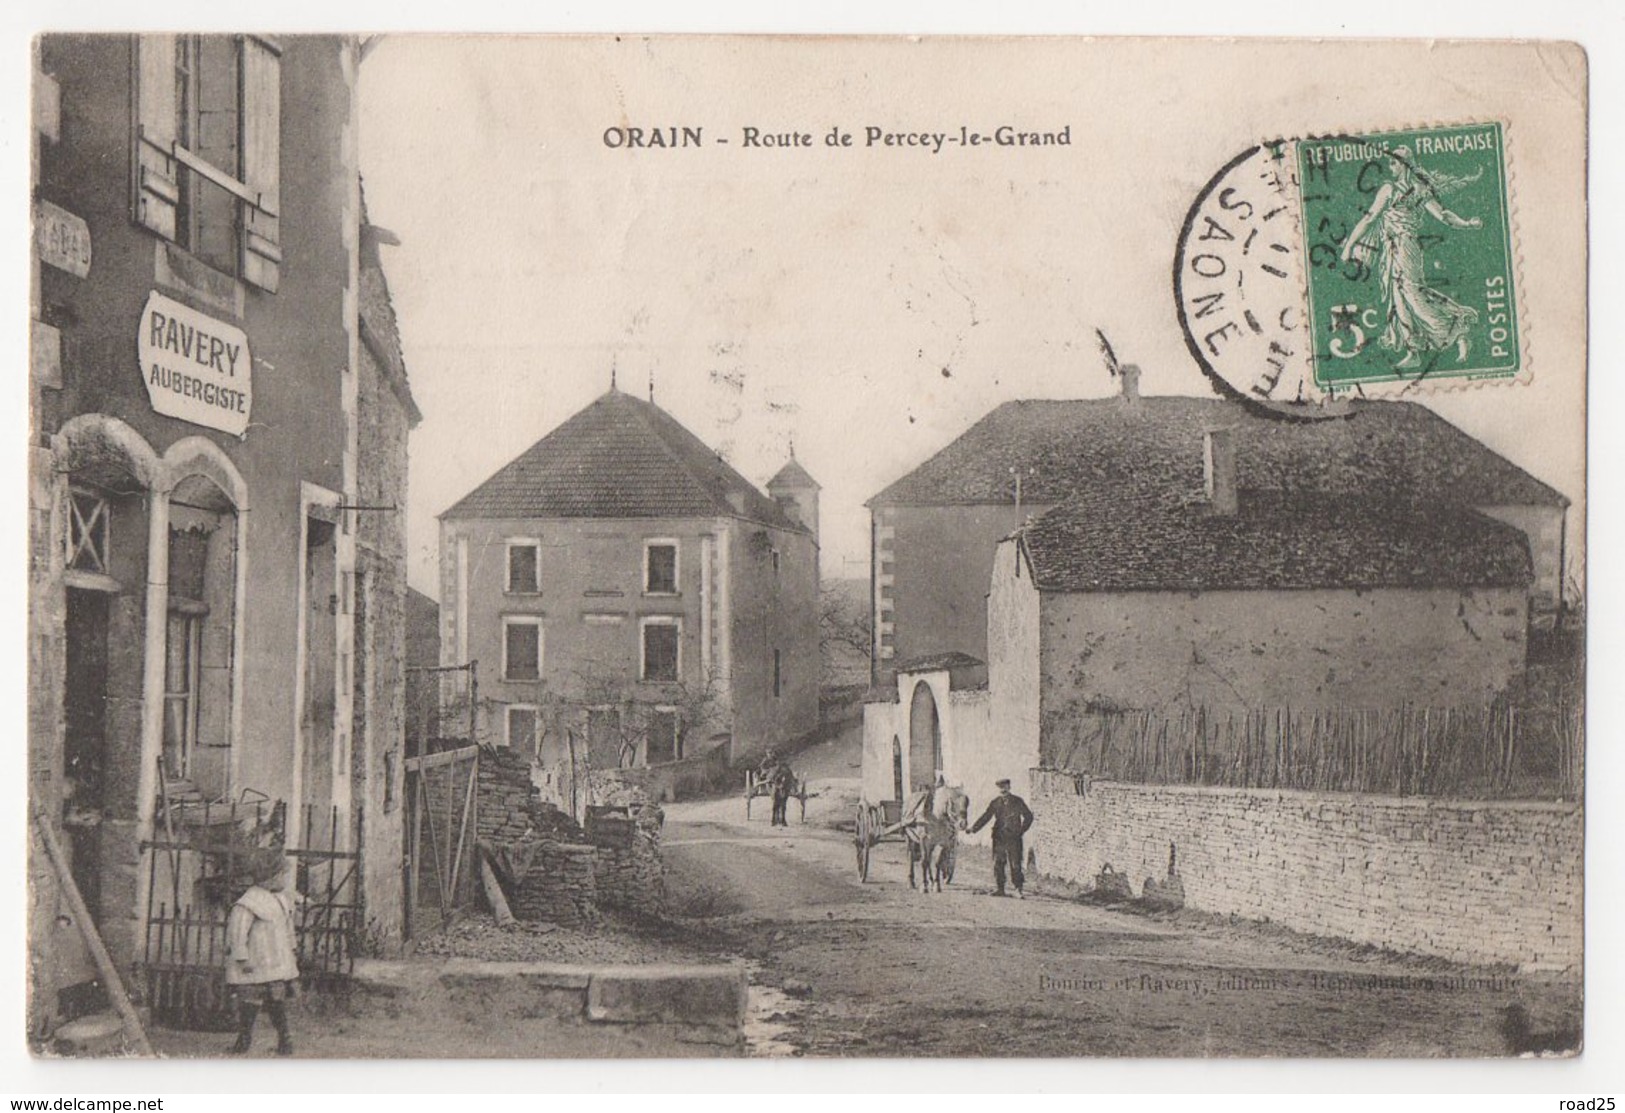 ( 21 ) Lot de 66 cartes postales anciennes du département de la Côte d'Or